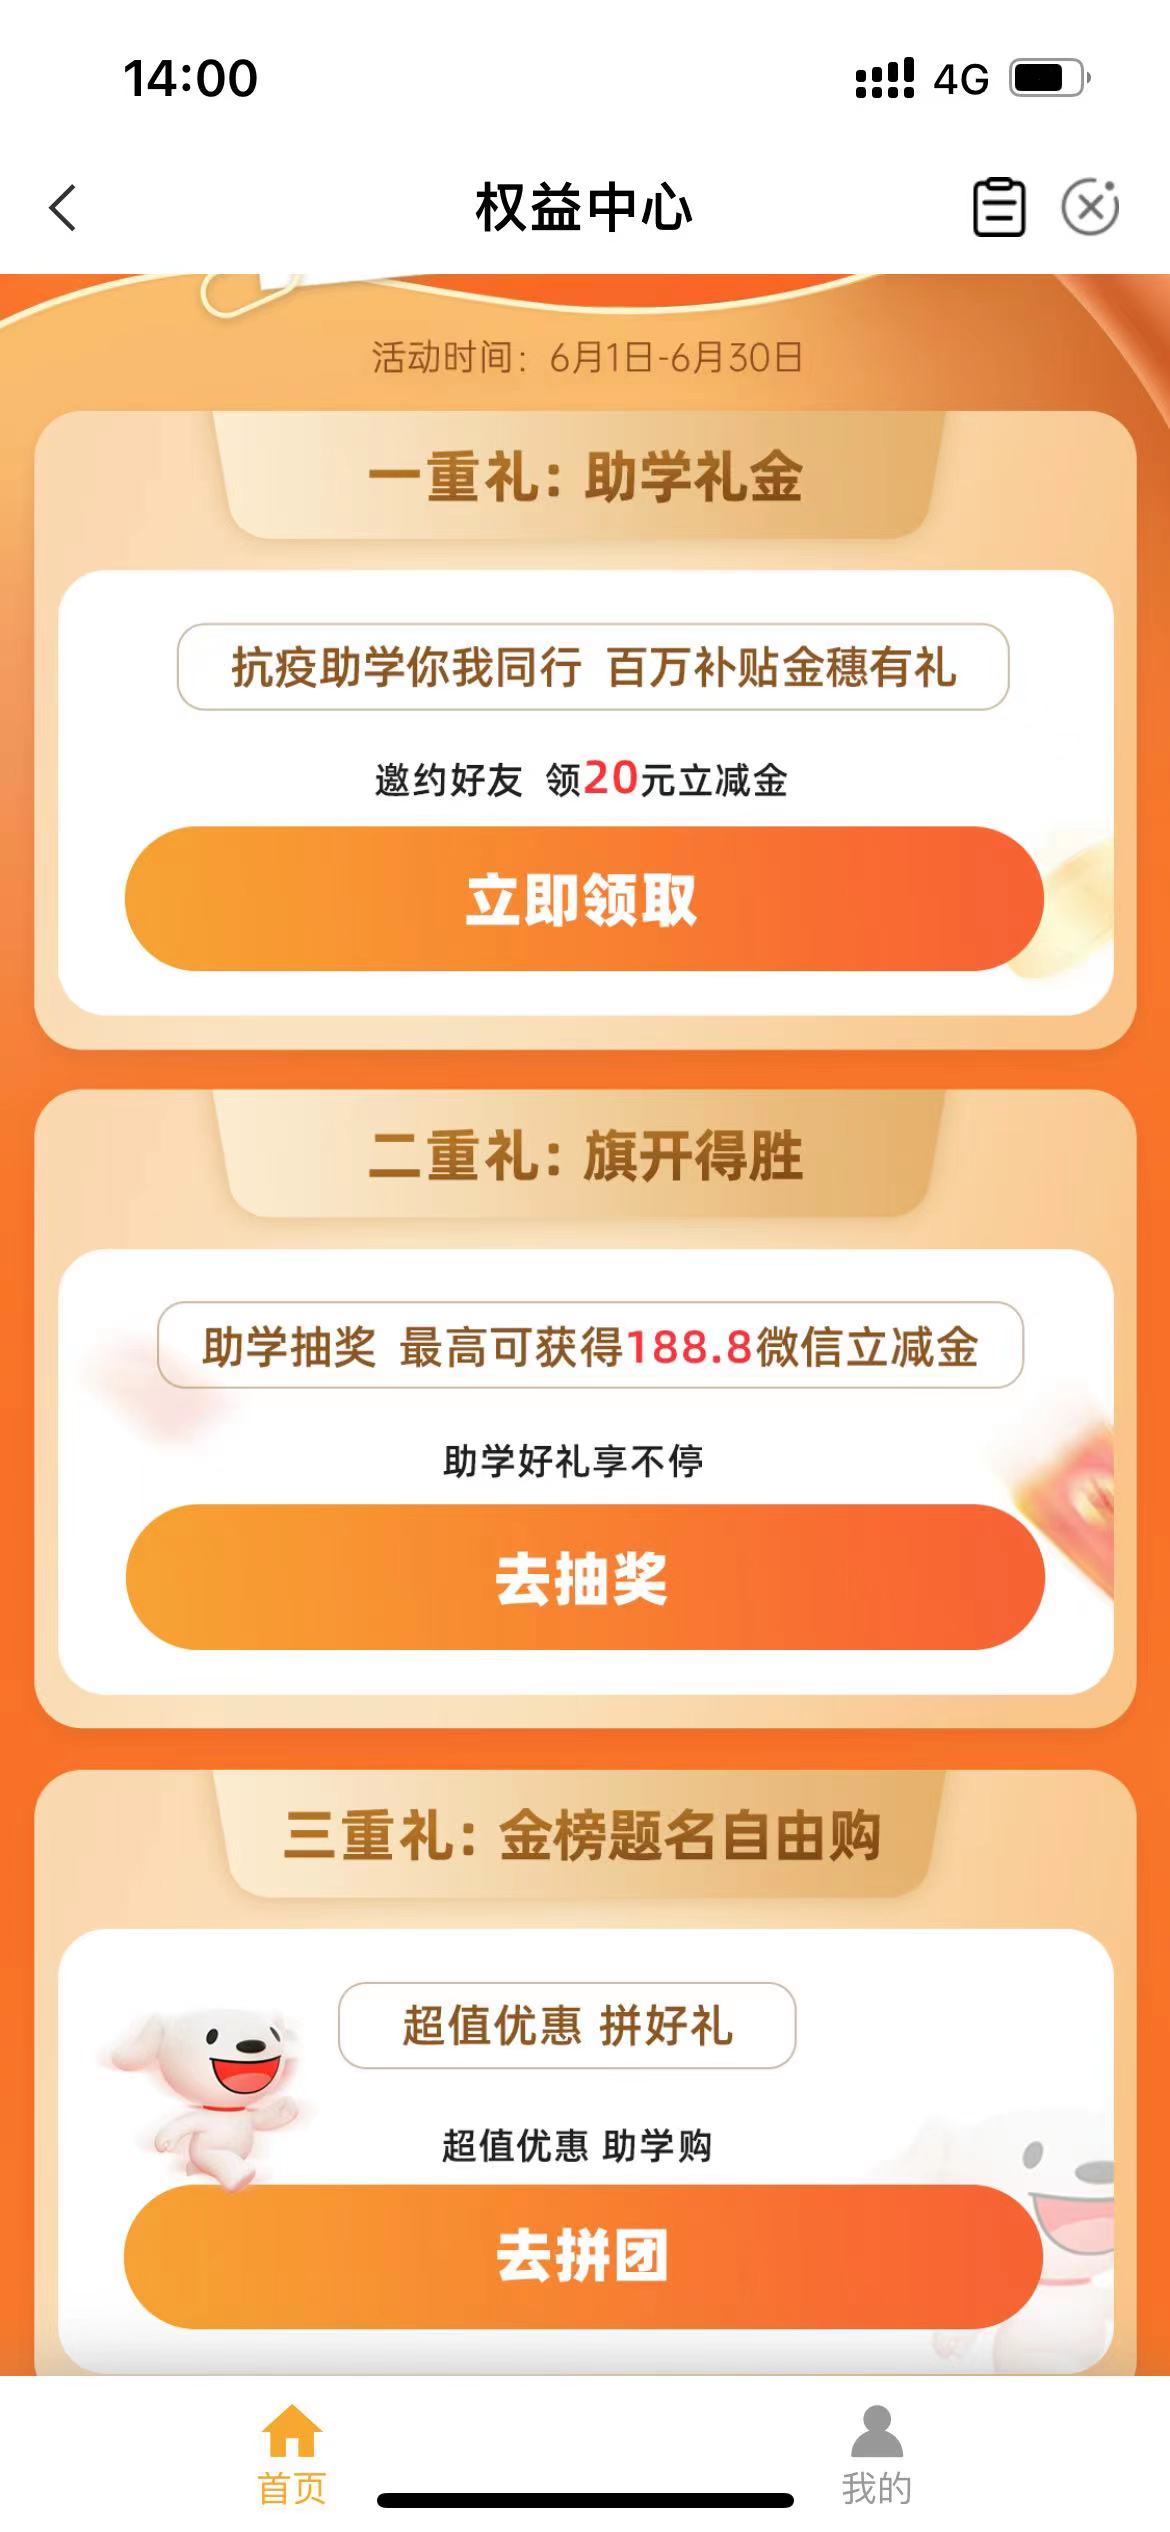 中国农业银行APP 微信立奖金58元 限制北京地区（待测试）